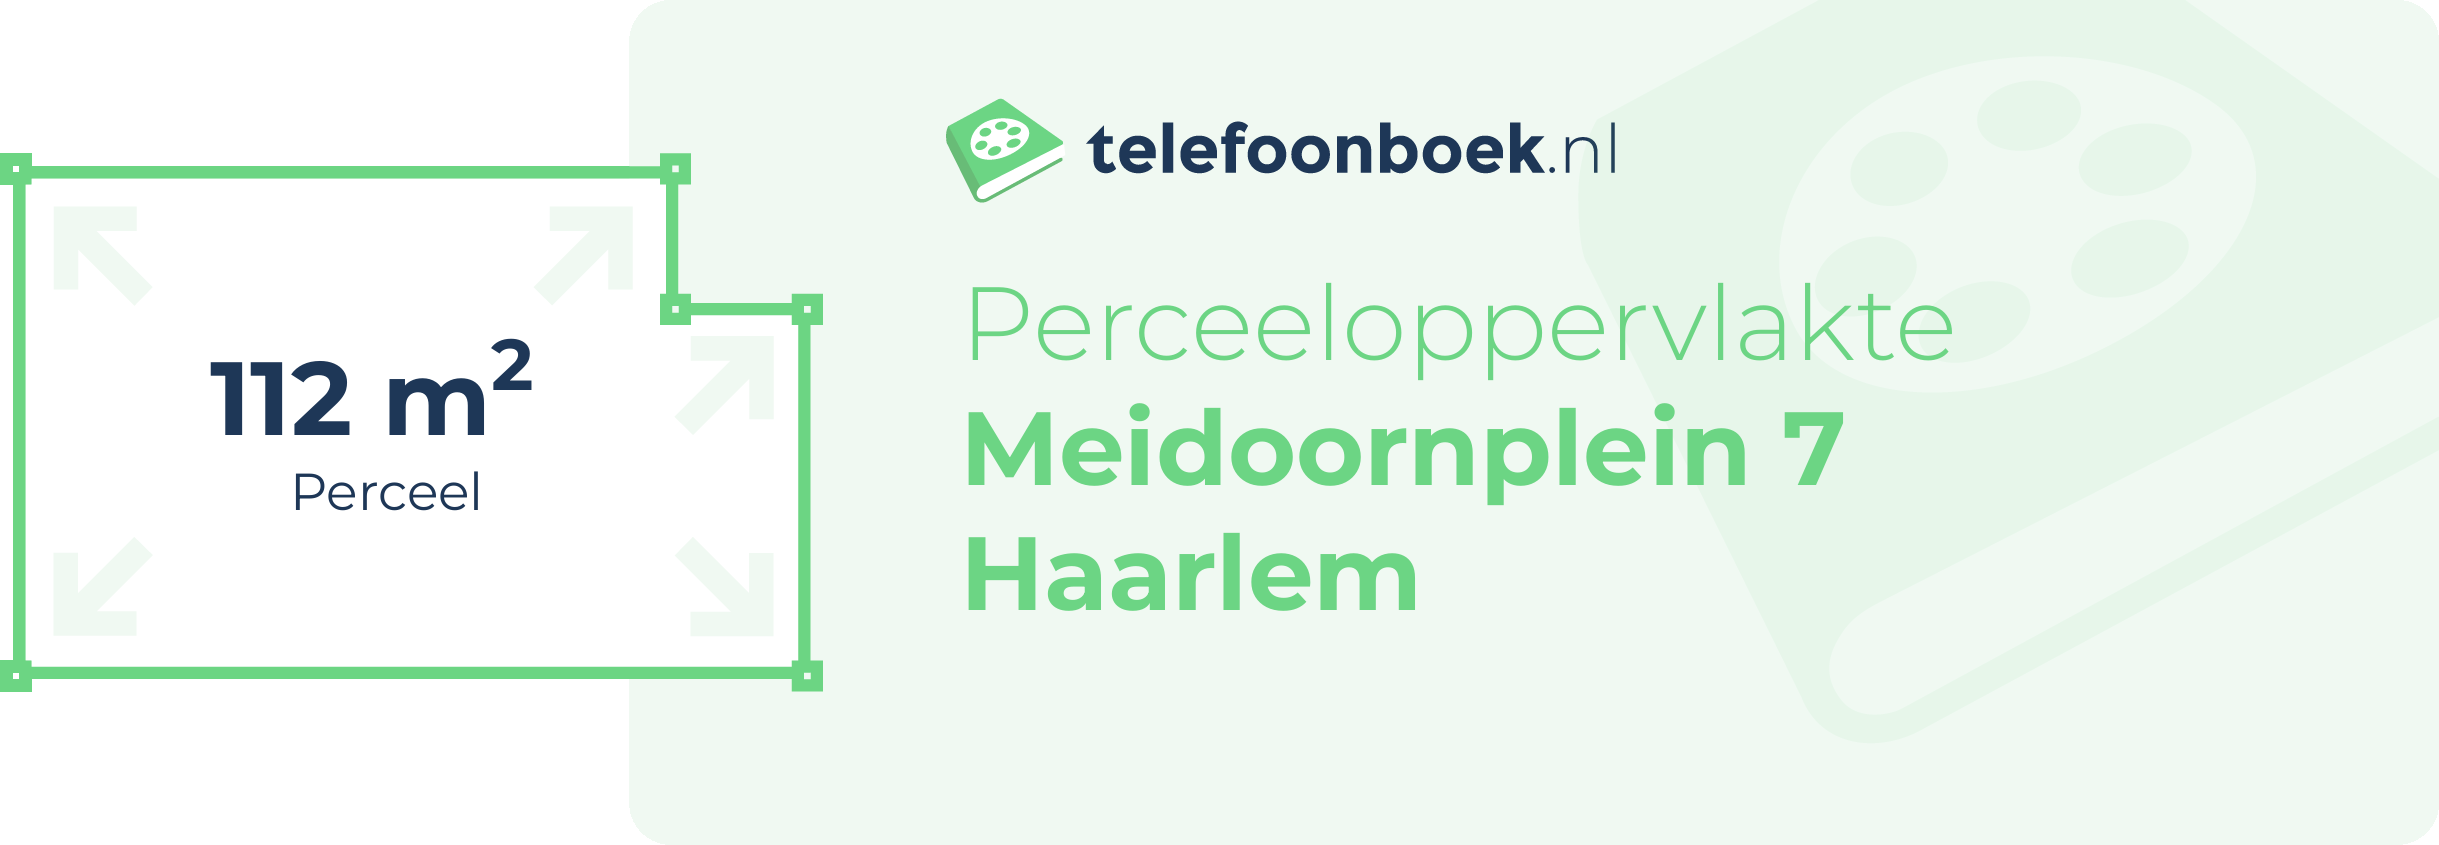 Perceeloppervlakte Meidoornplein 7 Haarlem